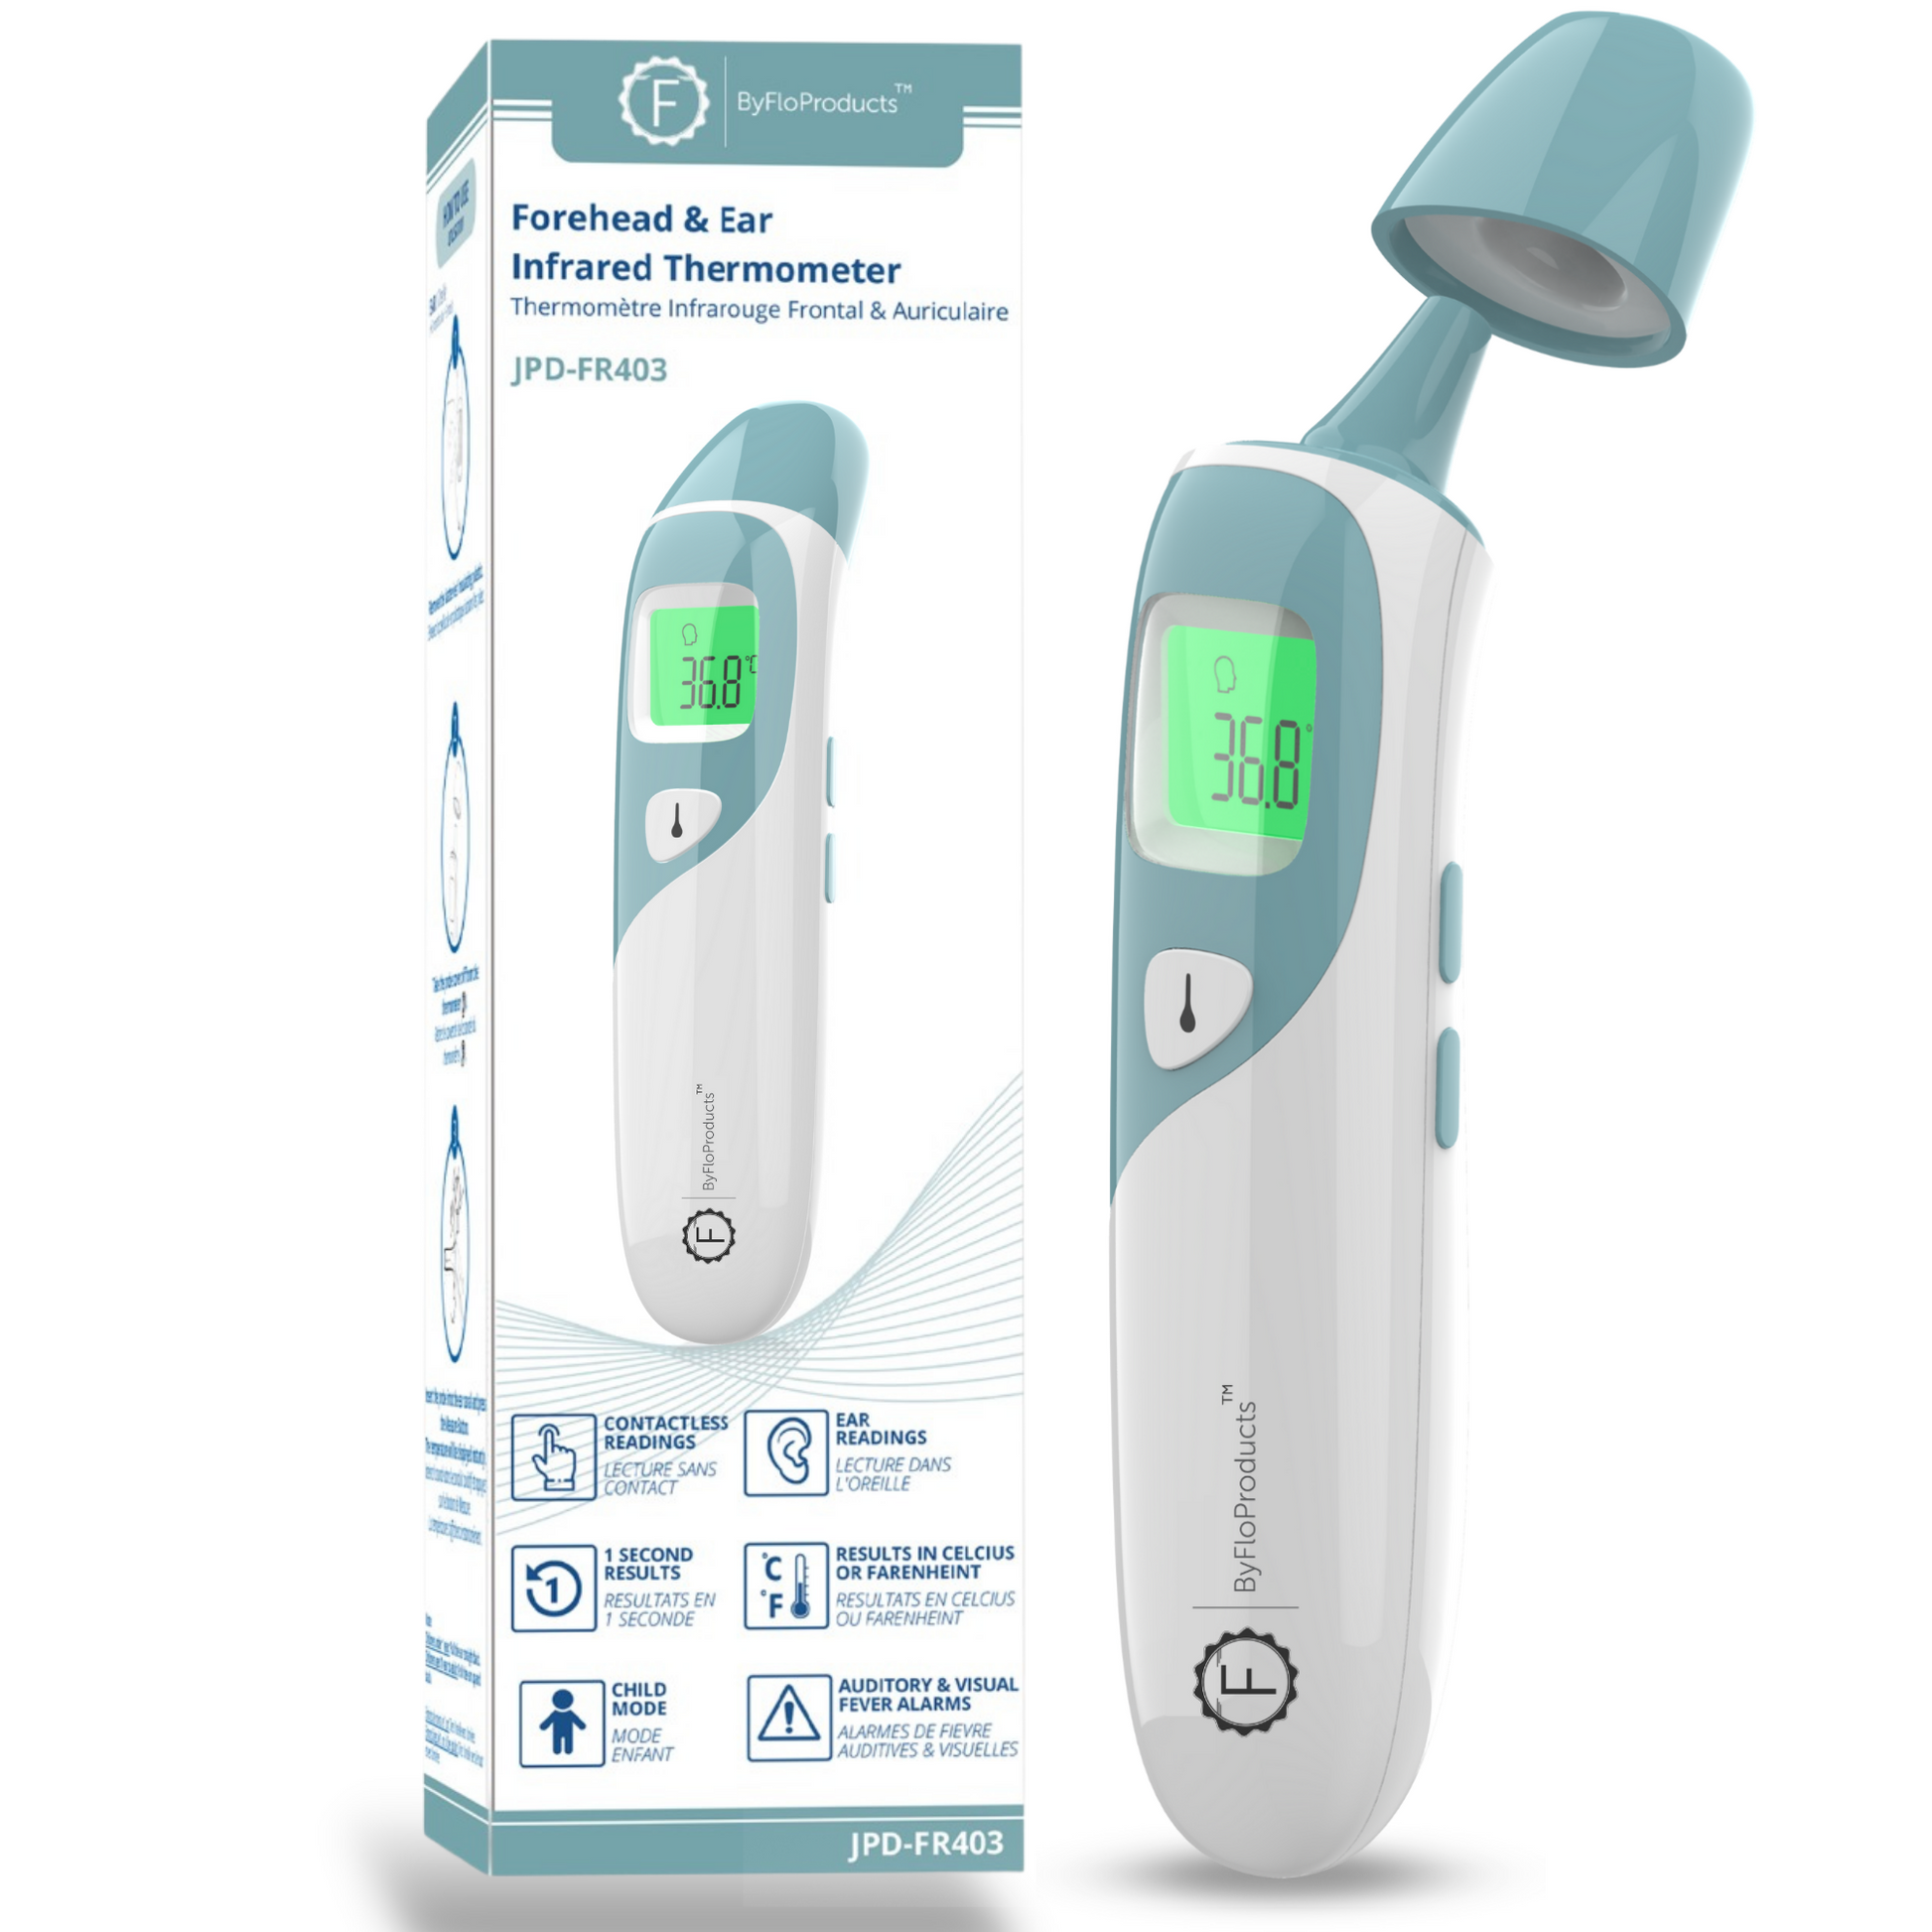 10 deuxième thermomètre à lecture rapide pour adultes, bébé, oral numérique  et amp; Thermomètre rectal pour la fièvre, thermomètre médical